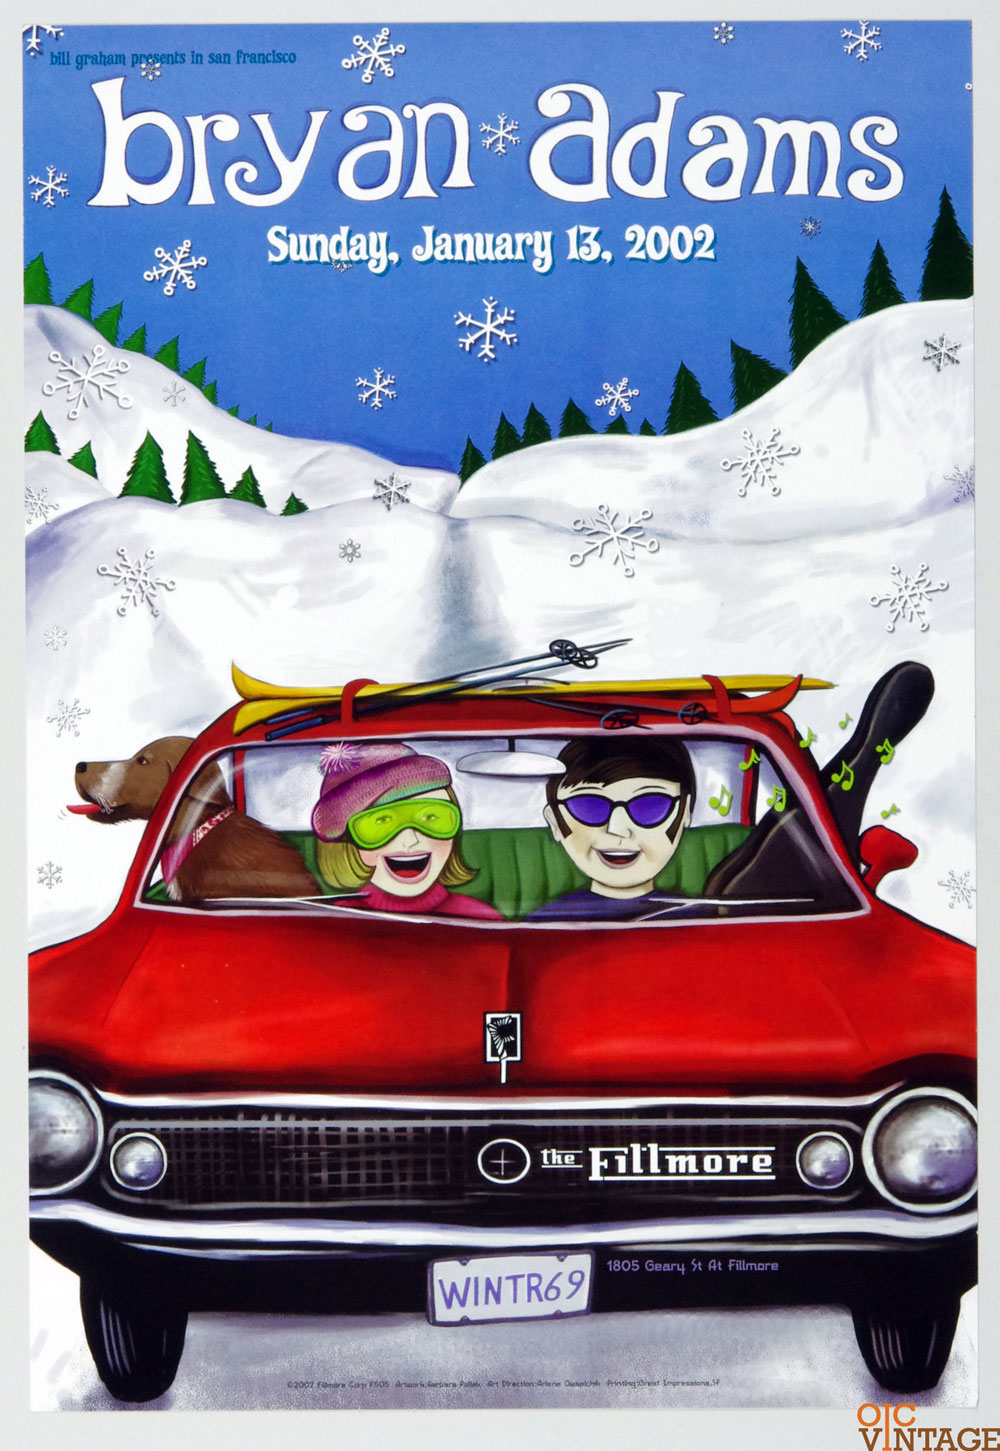 Bryan Adams Poster 2002 Jan 13 New Fillmore